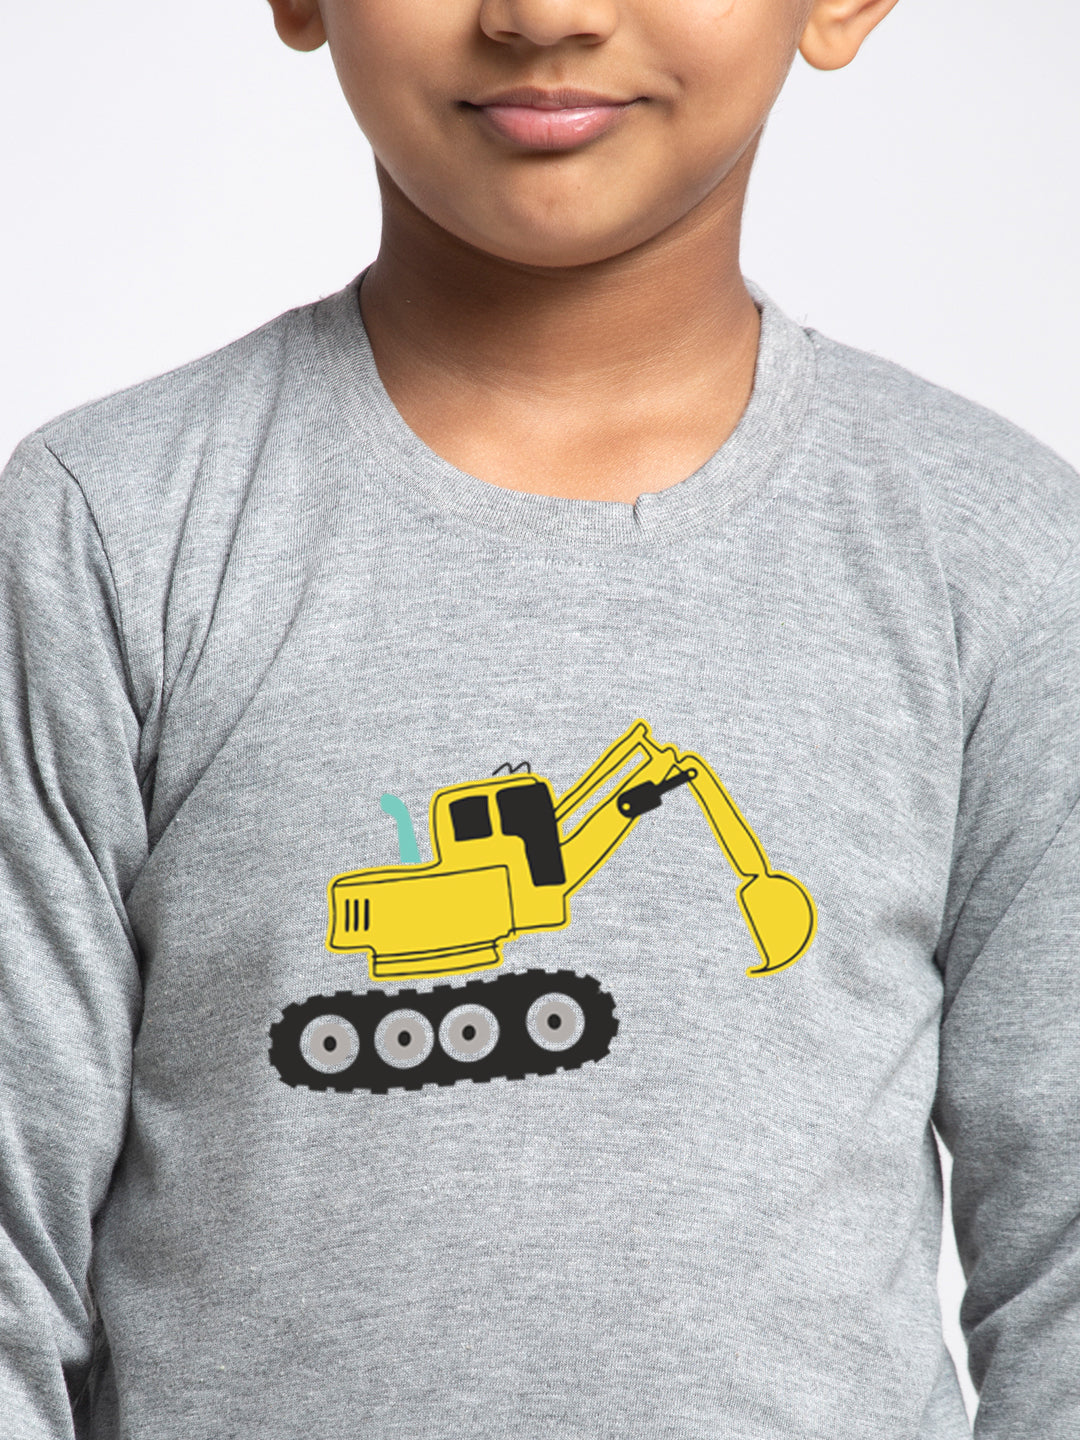 Kids Excavator printed full sleeves t-shirt - Friskers